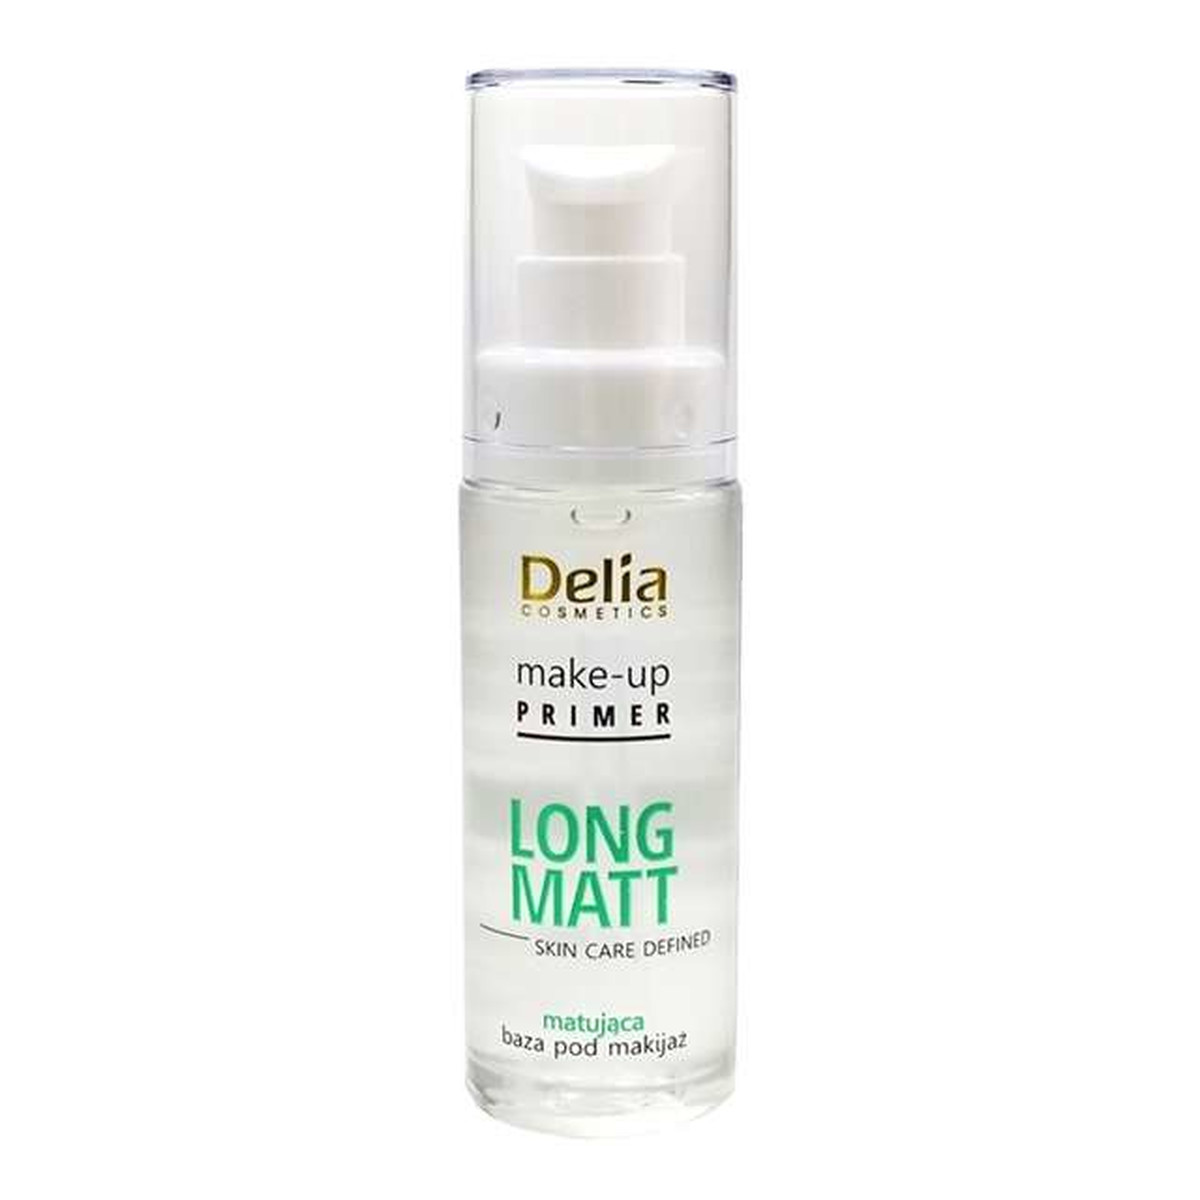 Delia LONG MATT matująca Baza pod makijaż 30ml